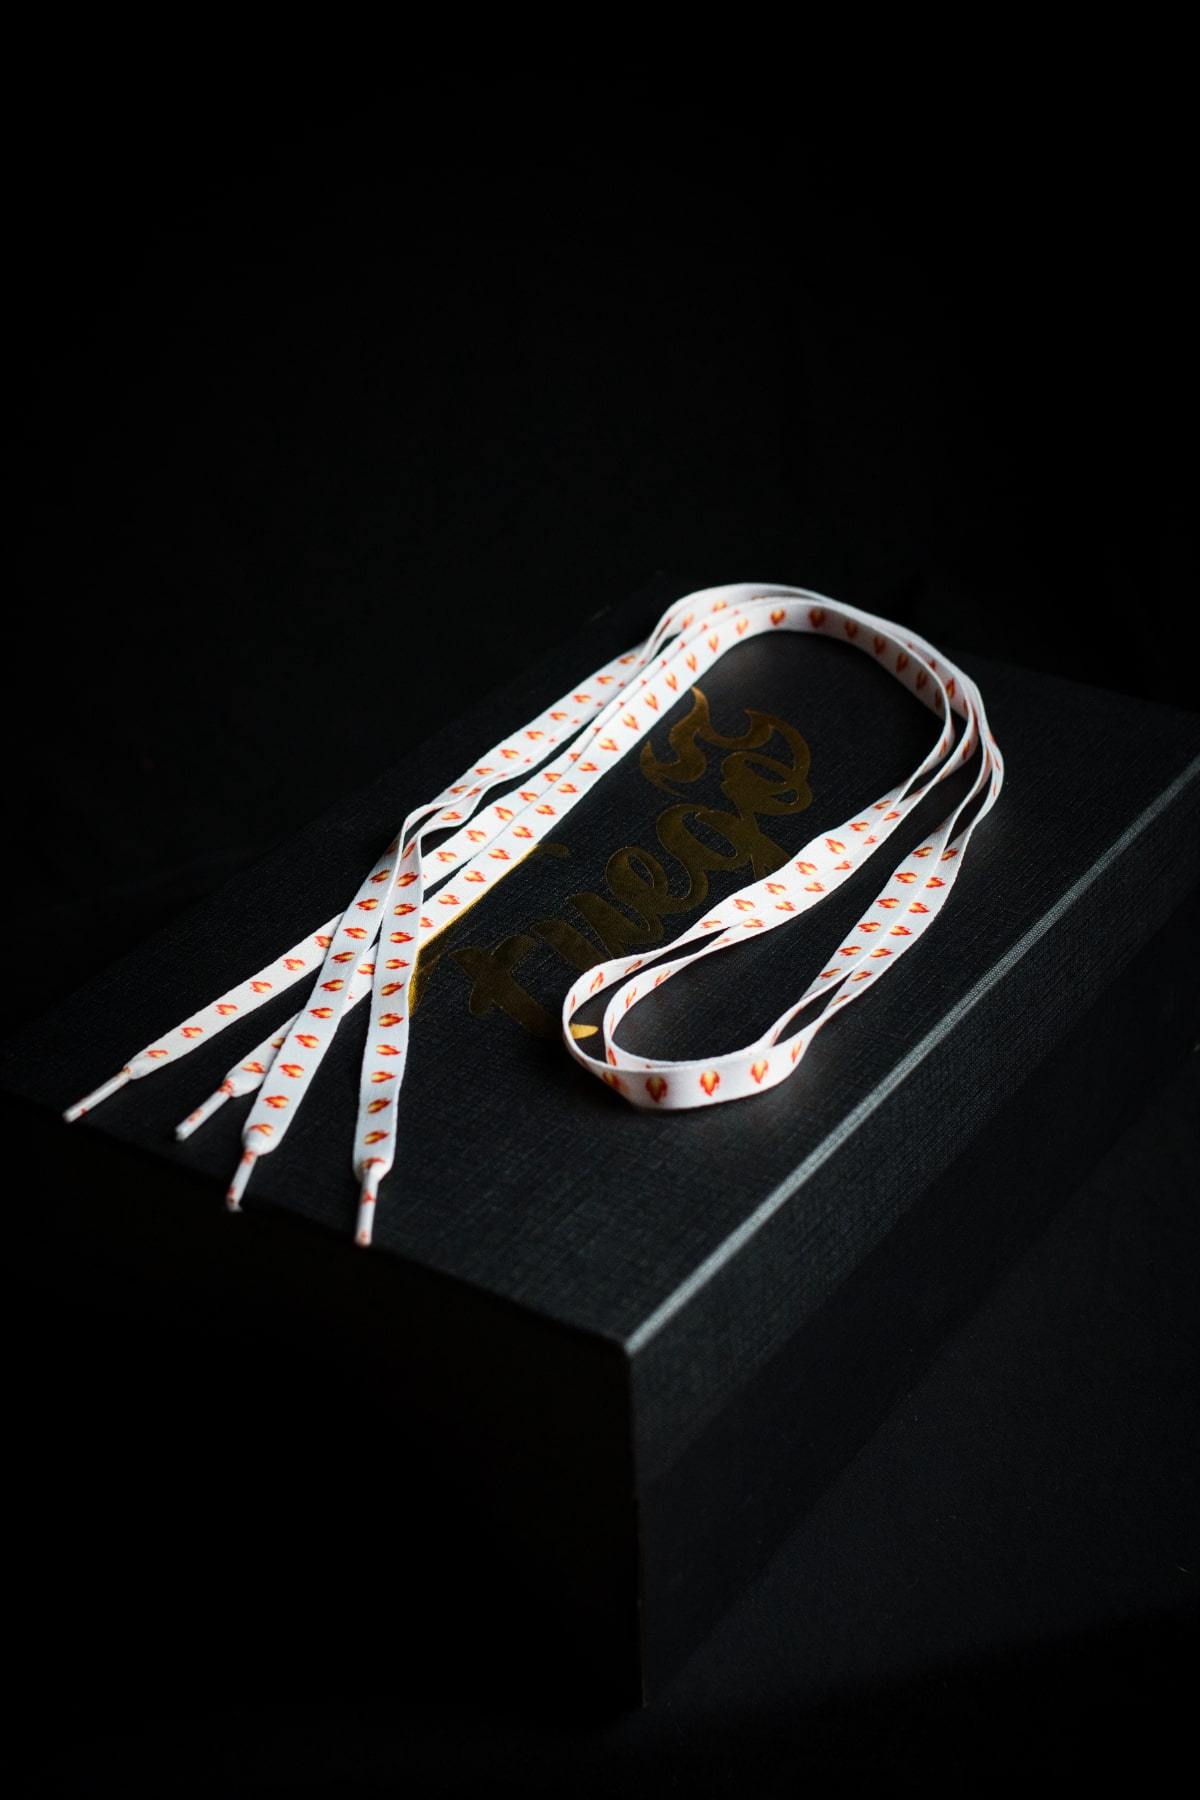 Louis Vuitton Shoelaces 115cm / White